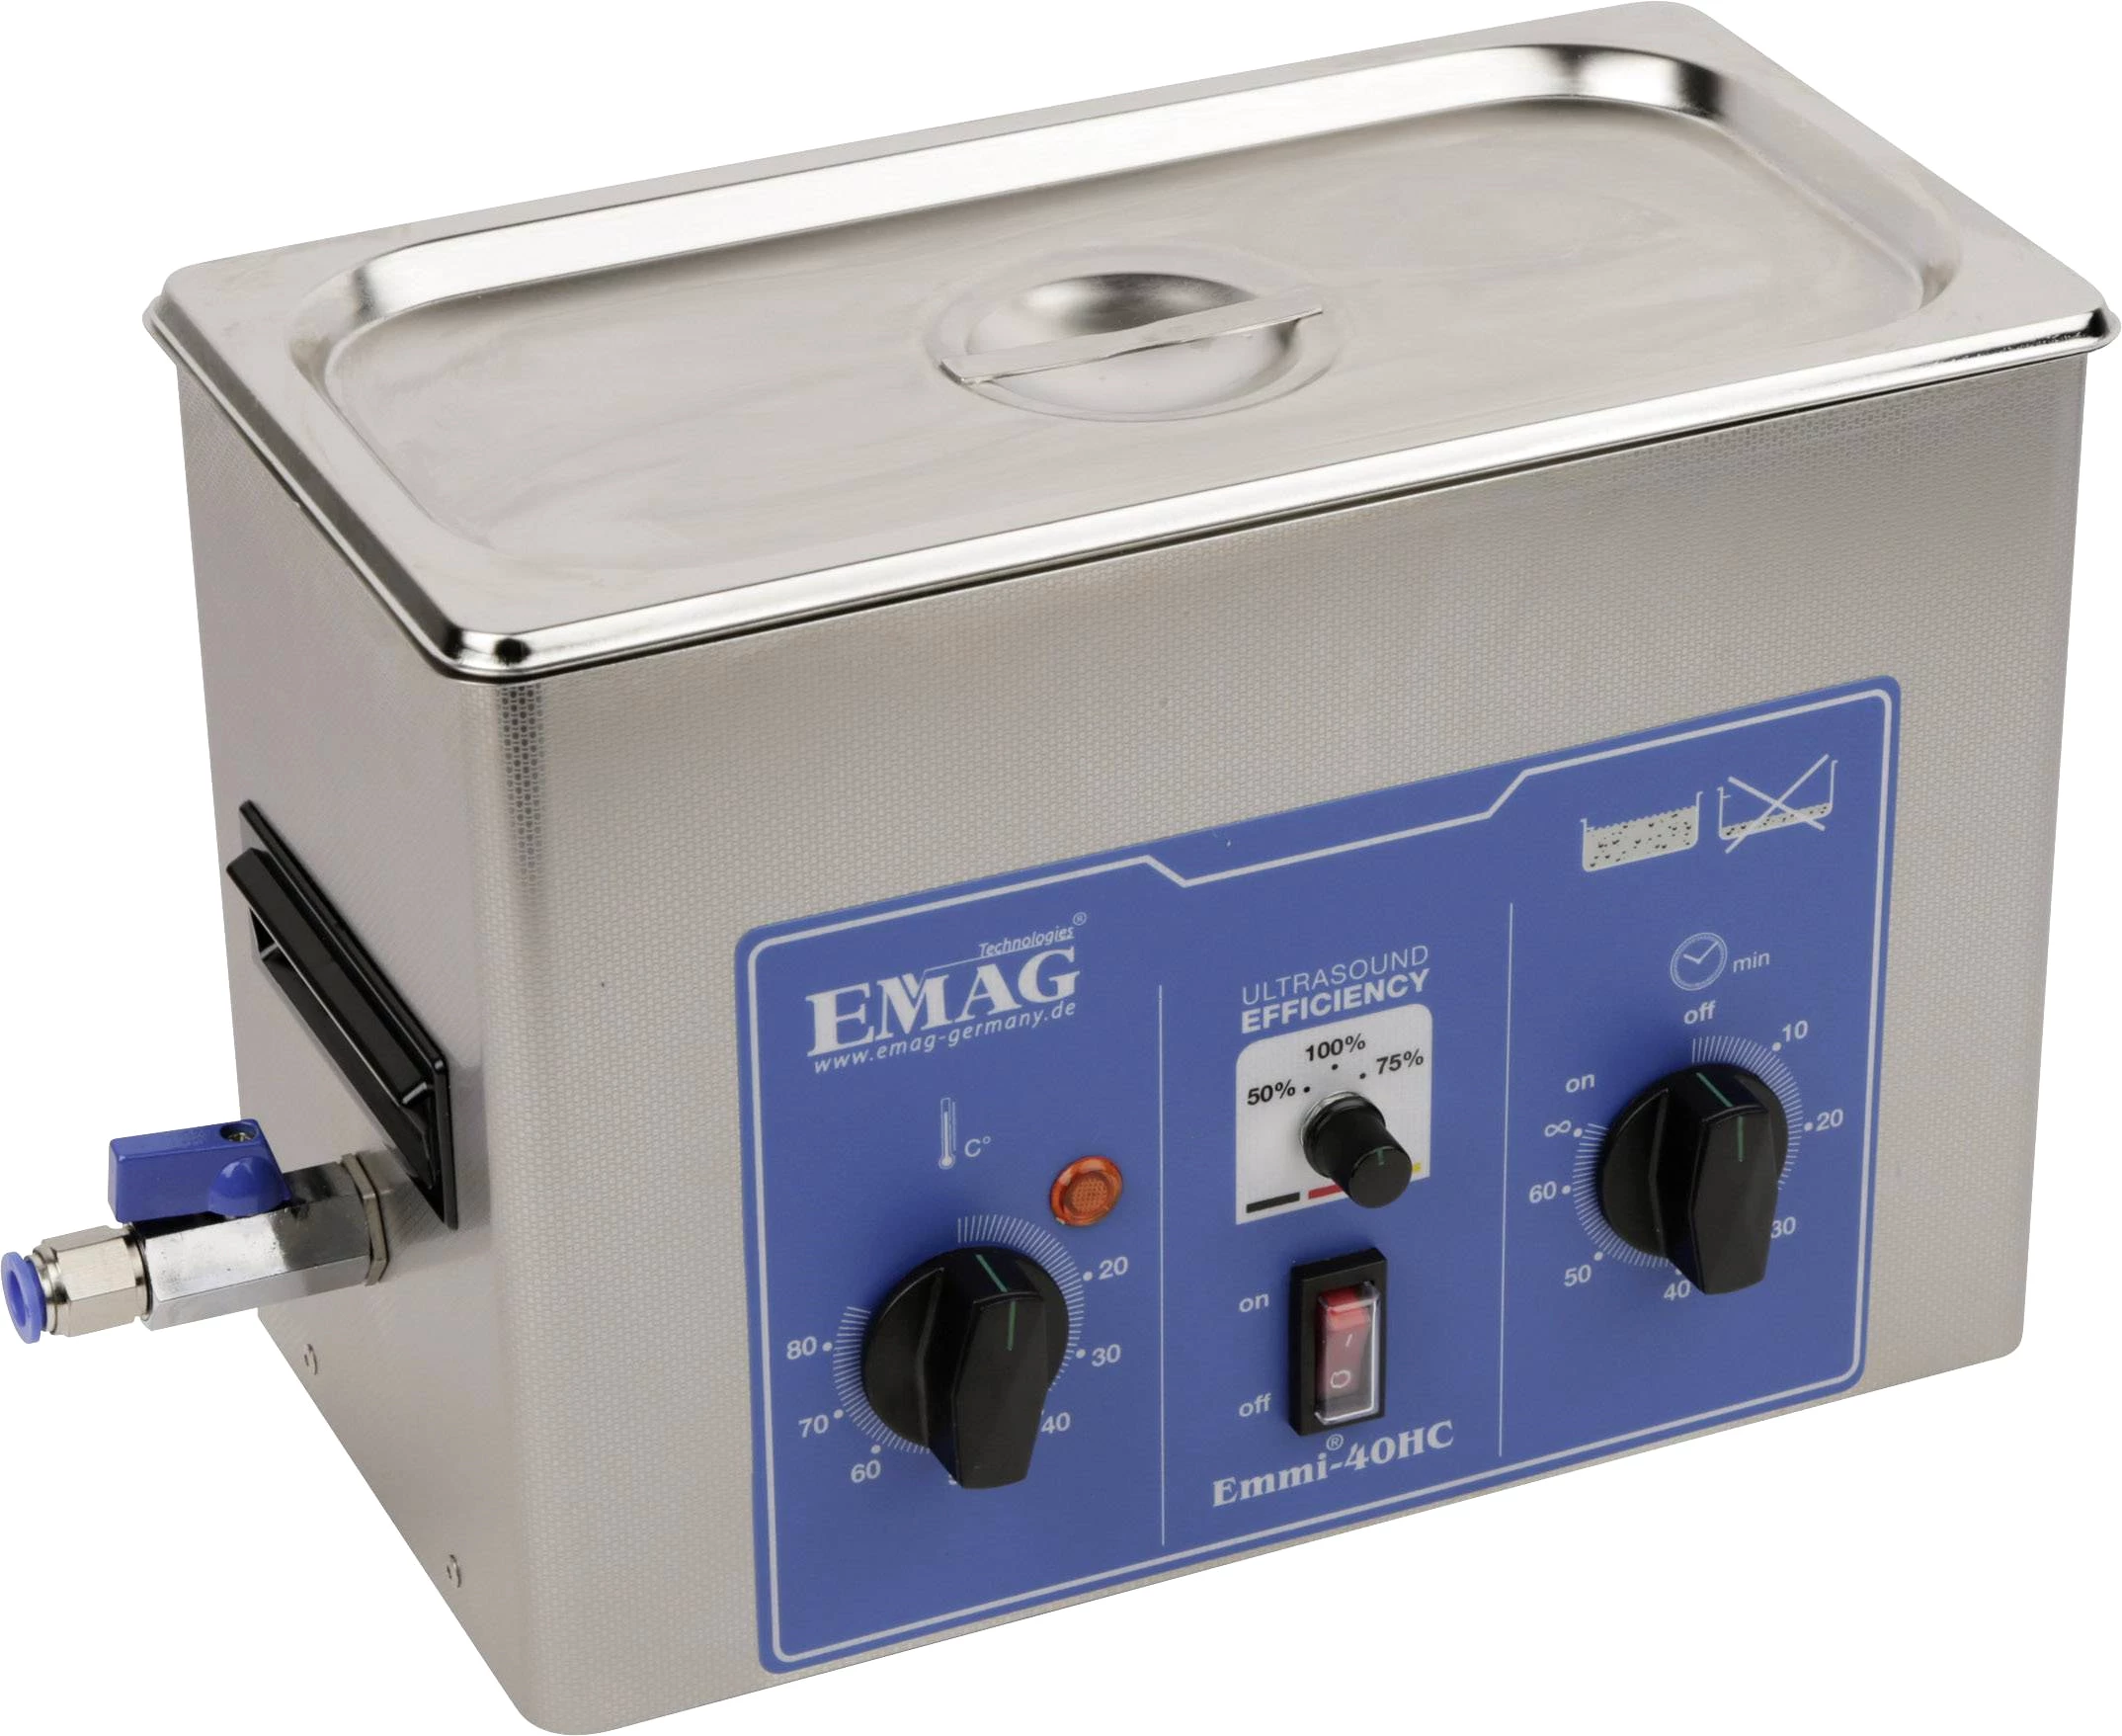 Emag EMMI 40HC Ultraschallreiniger  250 W 4 l  